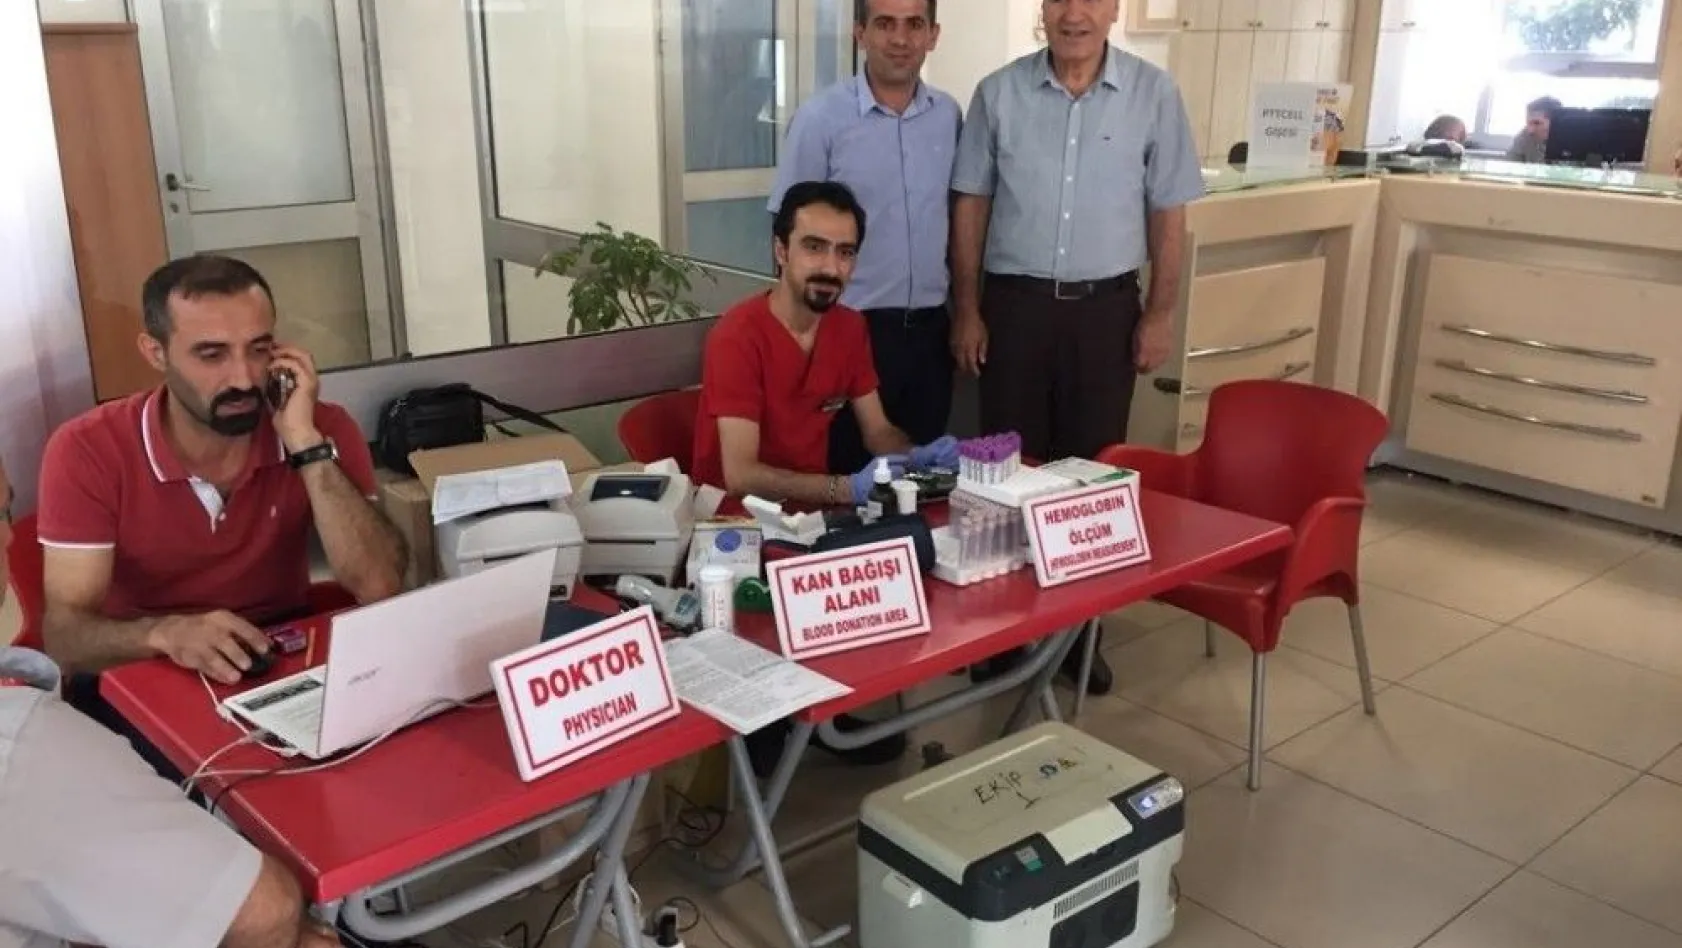 PTT'den Kızılay'a kan bağışı
